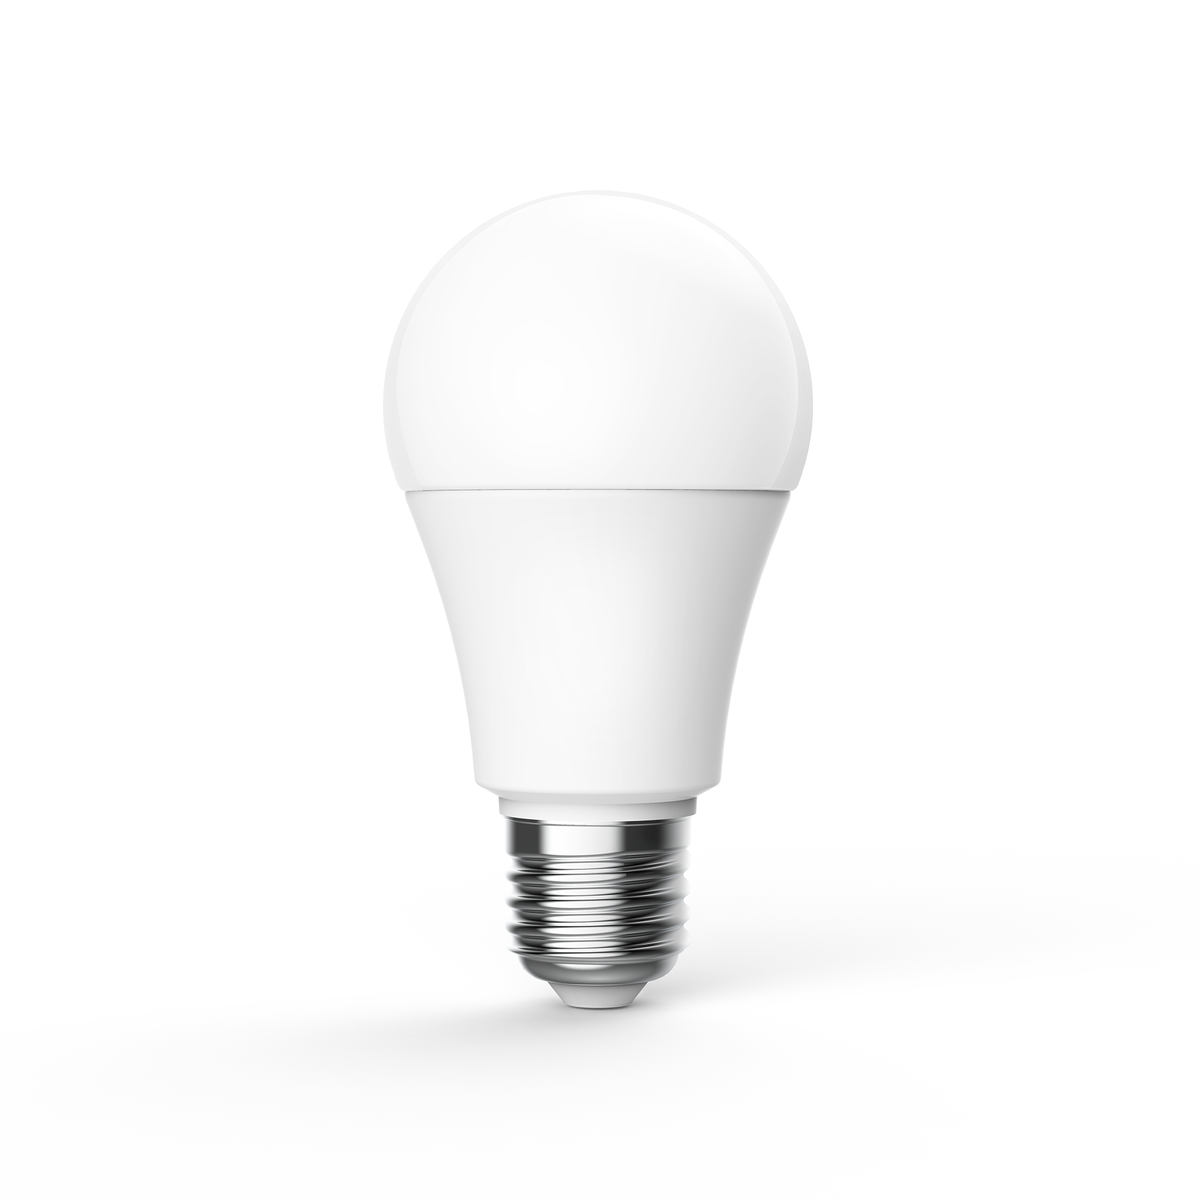 LED 燈泡 T1 (可調色溫)